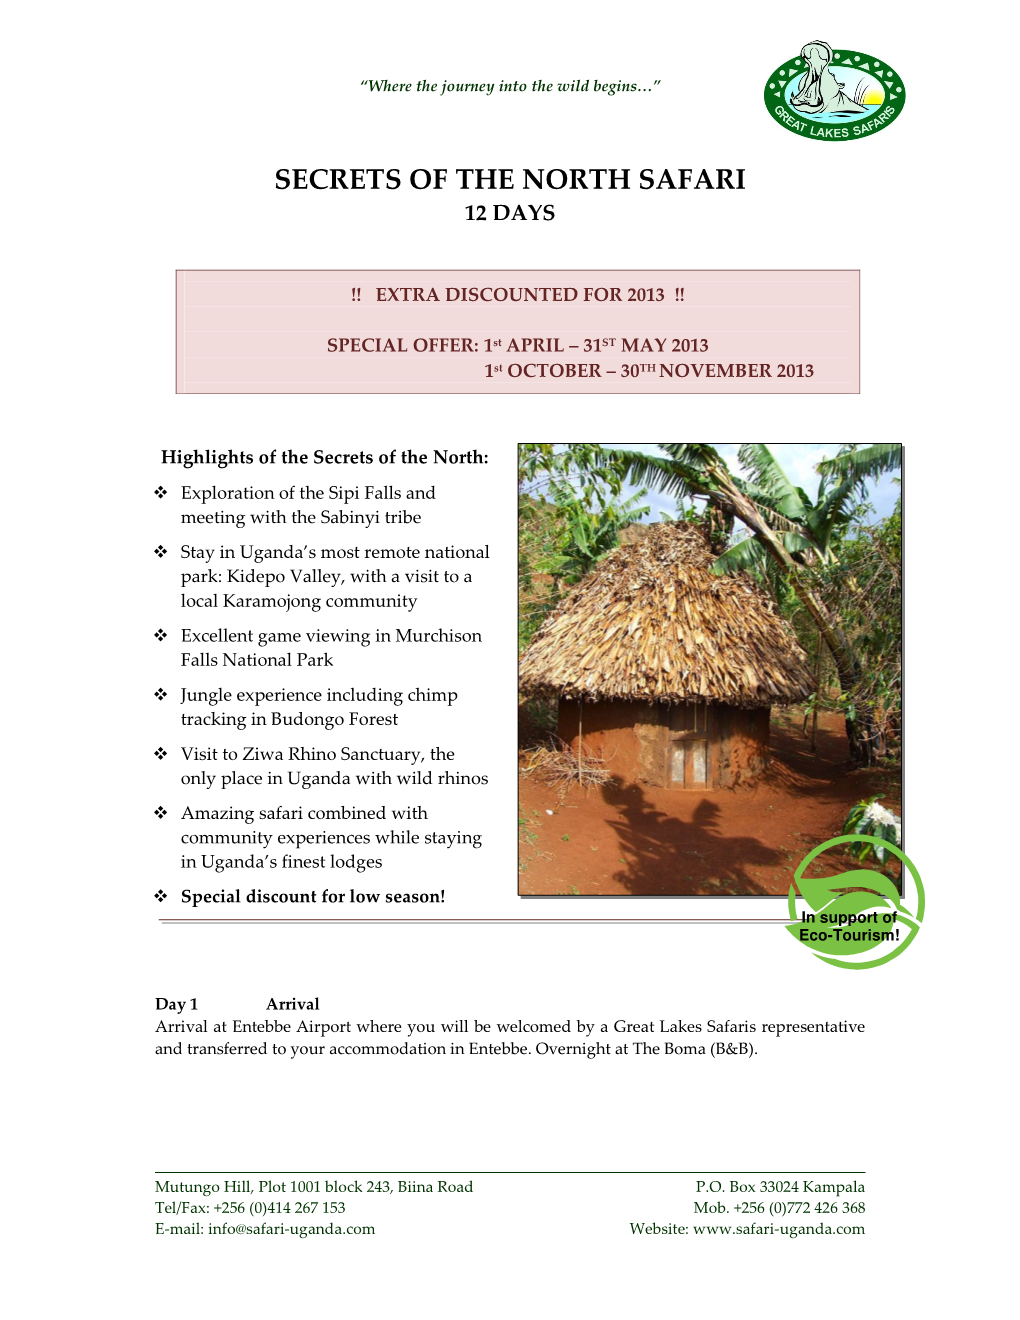 Secrets of the North Safari 12 Days